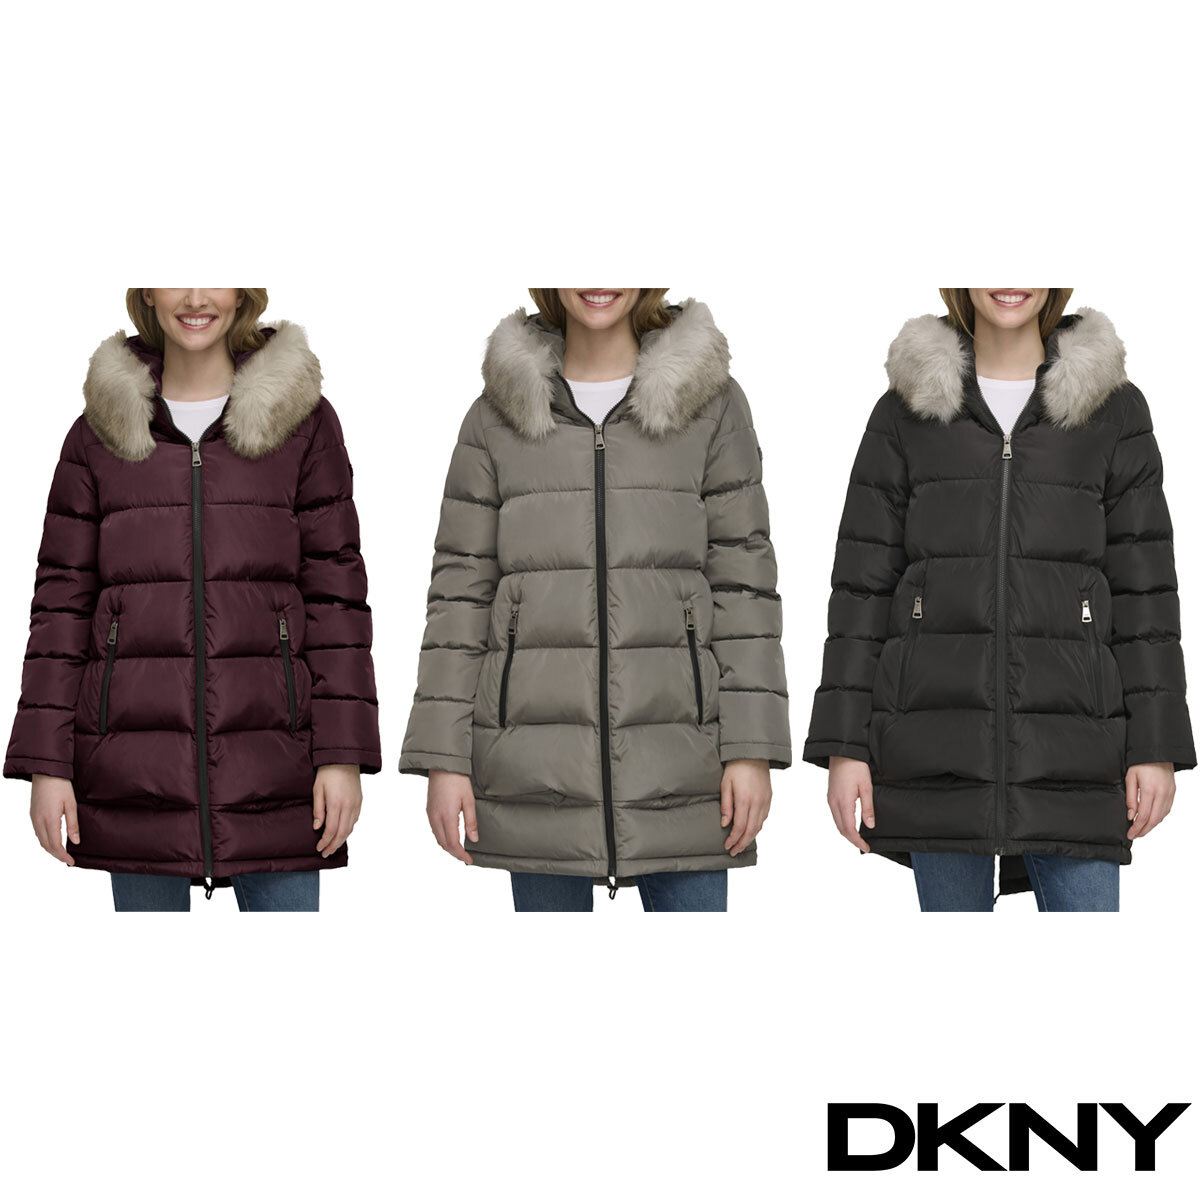 Womens DKNY, DKNY Clothing